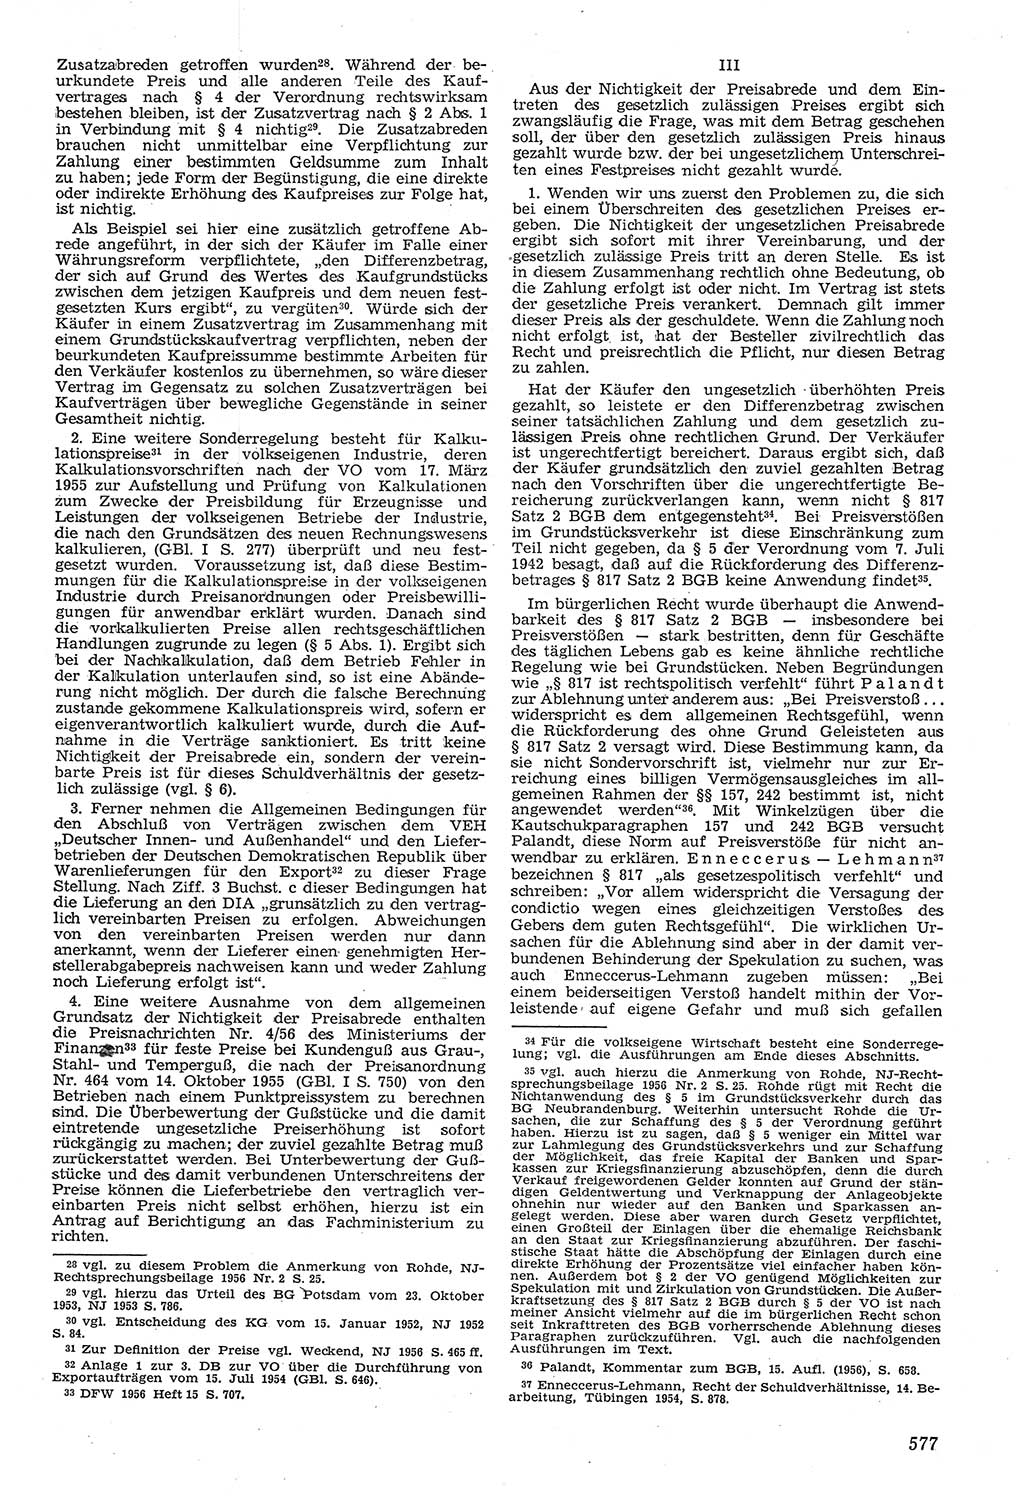 Neue Justiz (NJ), Zeitschrift für Recht und Rechtswissenschaft [Deutsche Demokratische Republik (DDR)], 11. Jahrgang 1957, Seite 577 (NJ DDR 1957, S. 577)